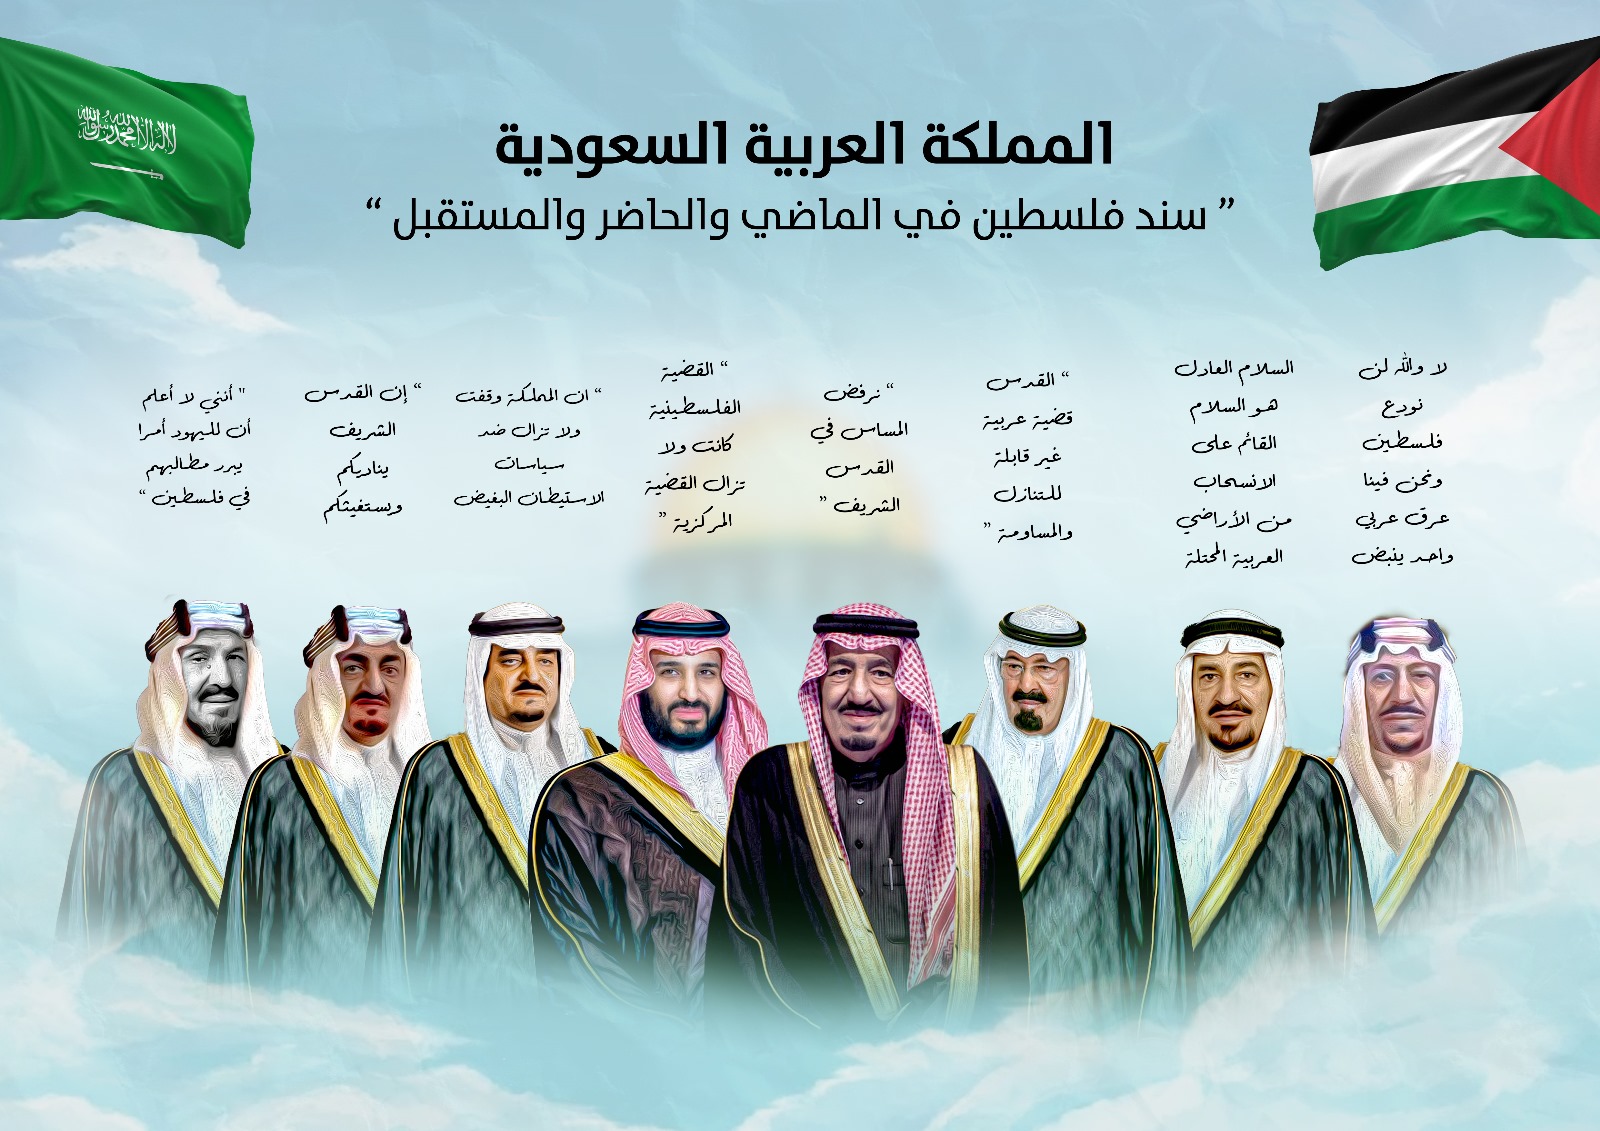 ملوك السعودية - المنتصف